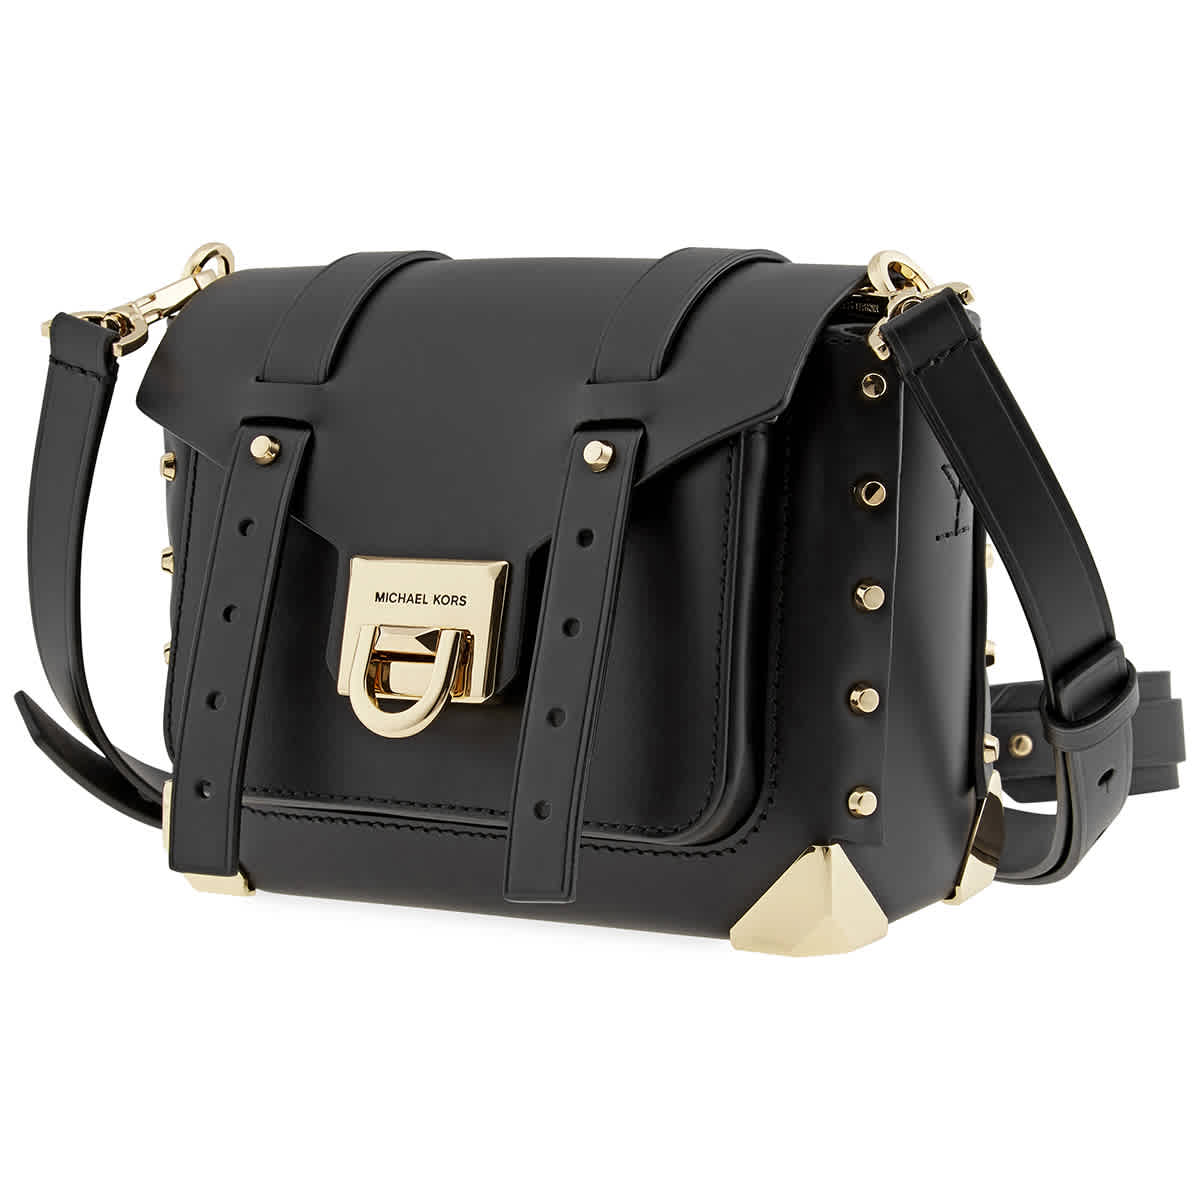 Michael Kors Black Crossbody Handbag - $133 (59% Off Retail